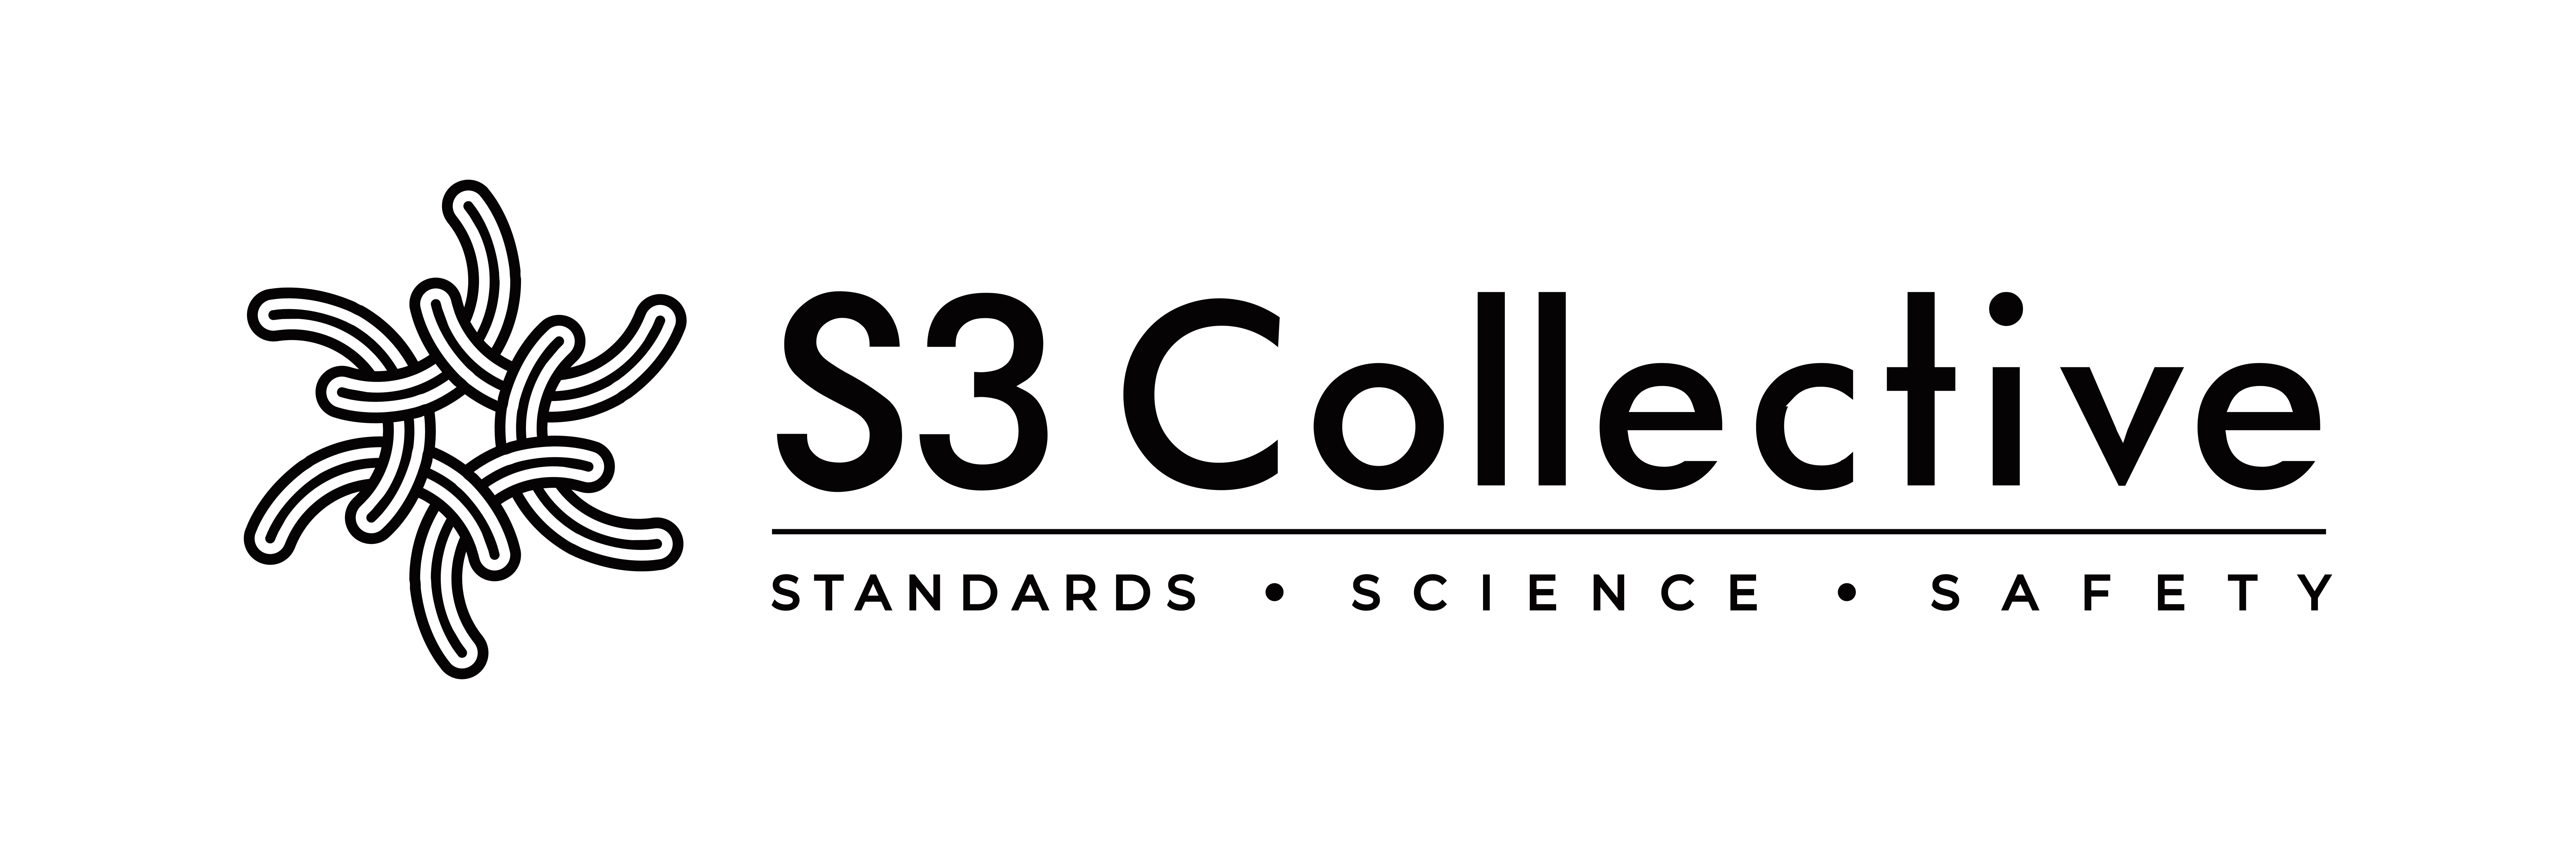 S3 collective logo